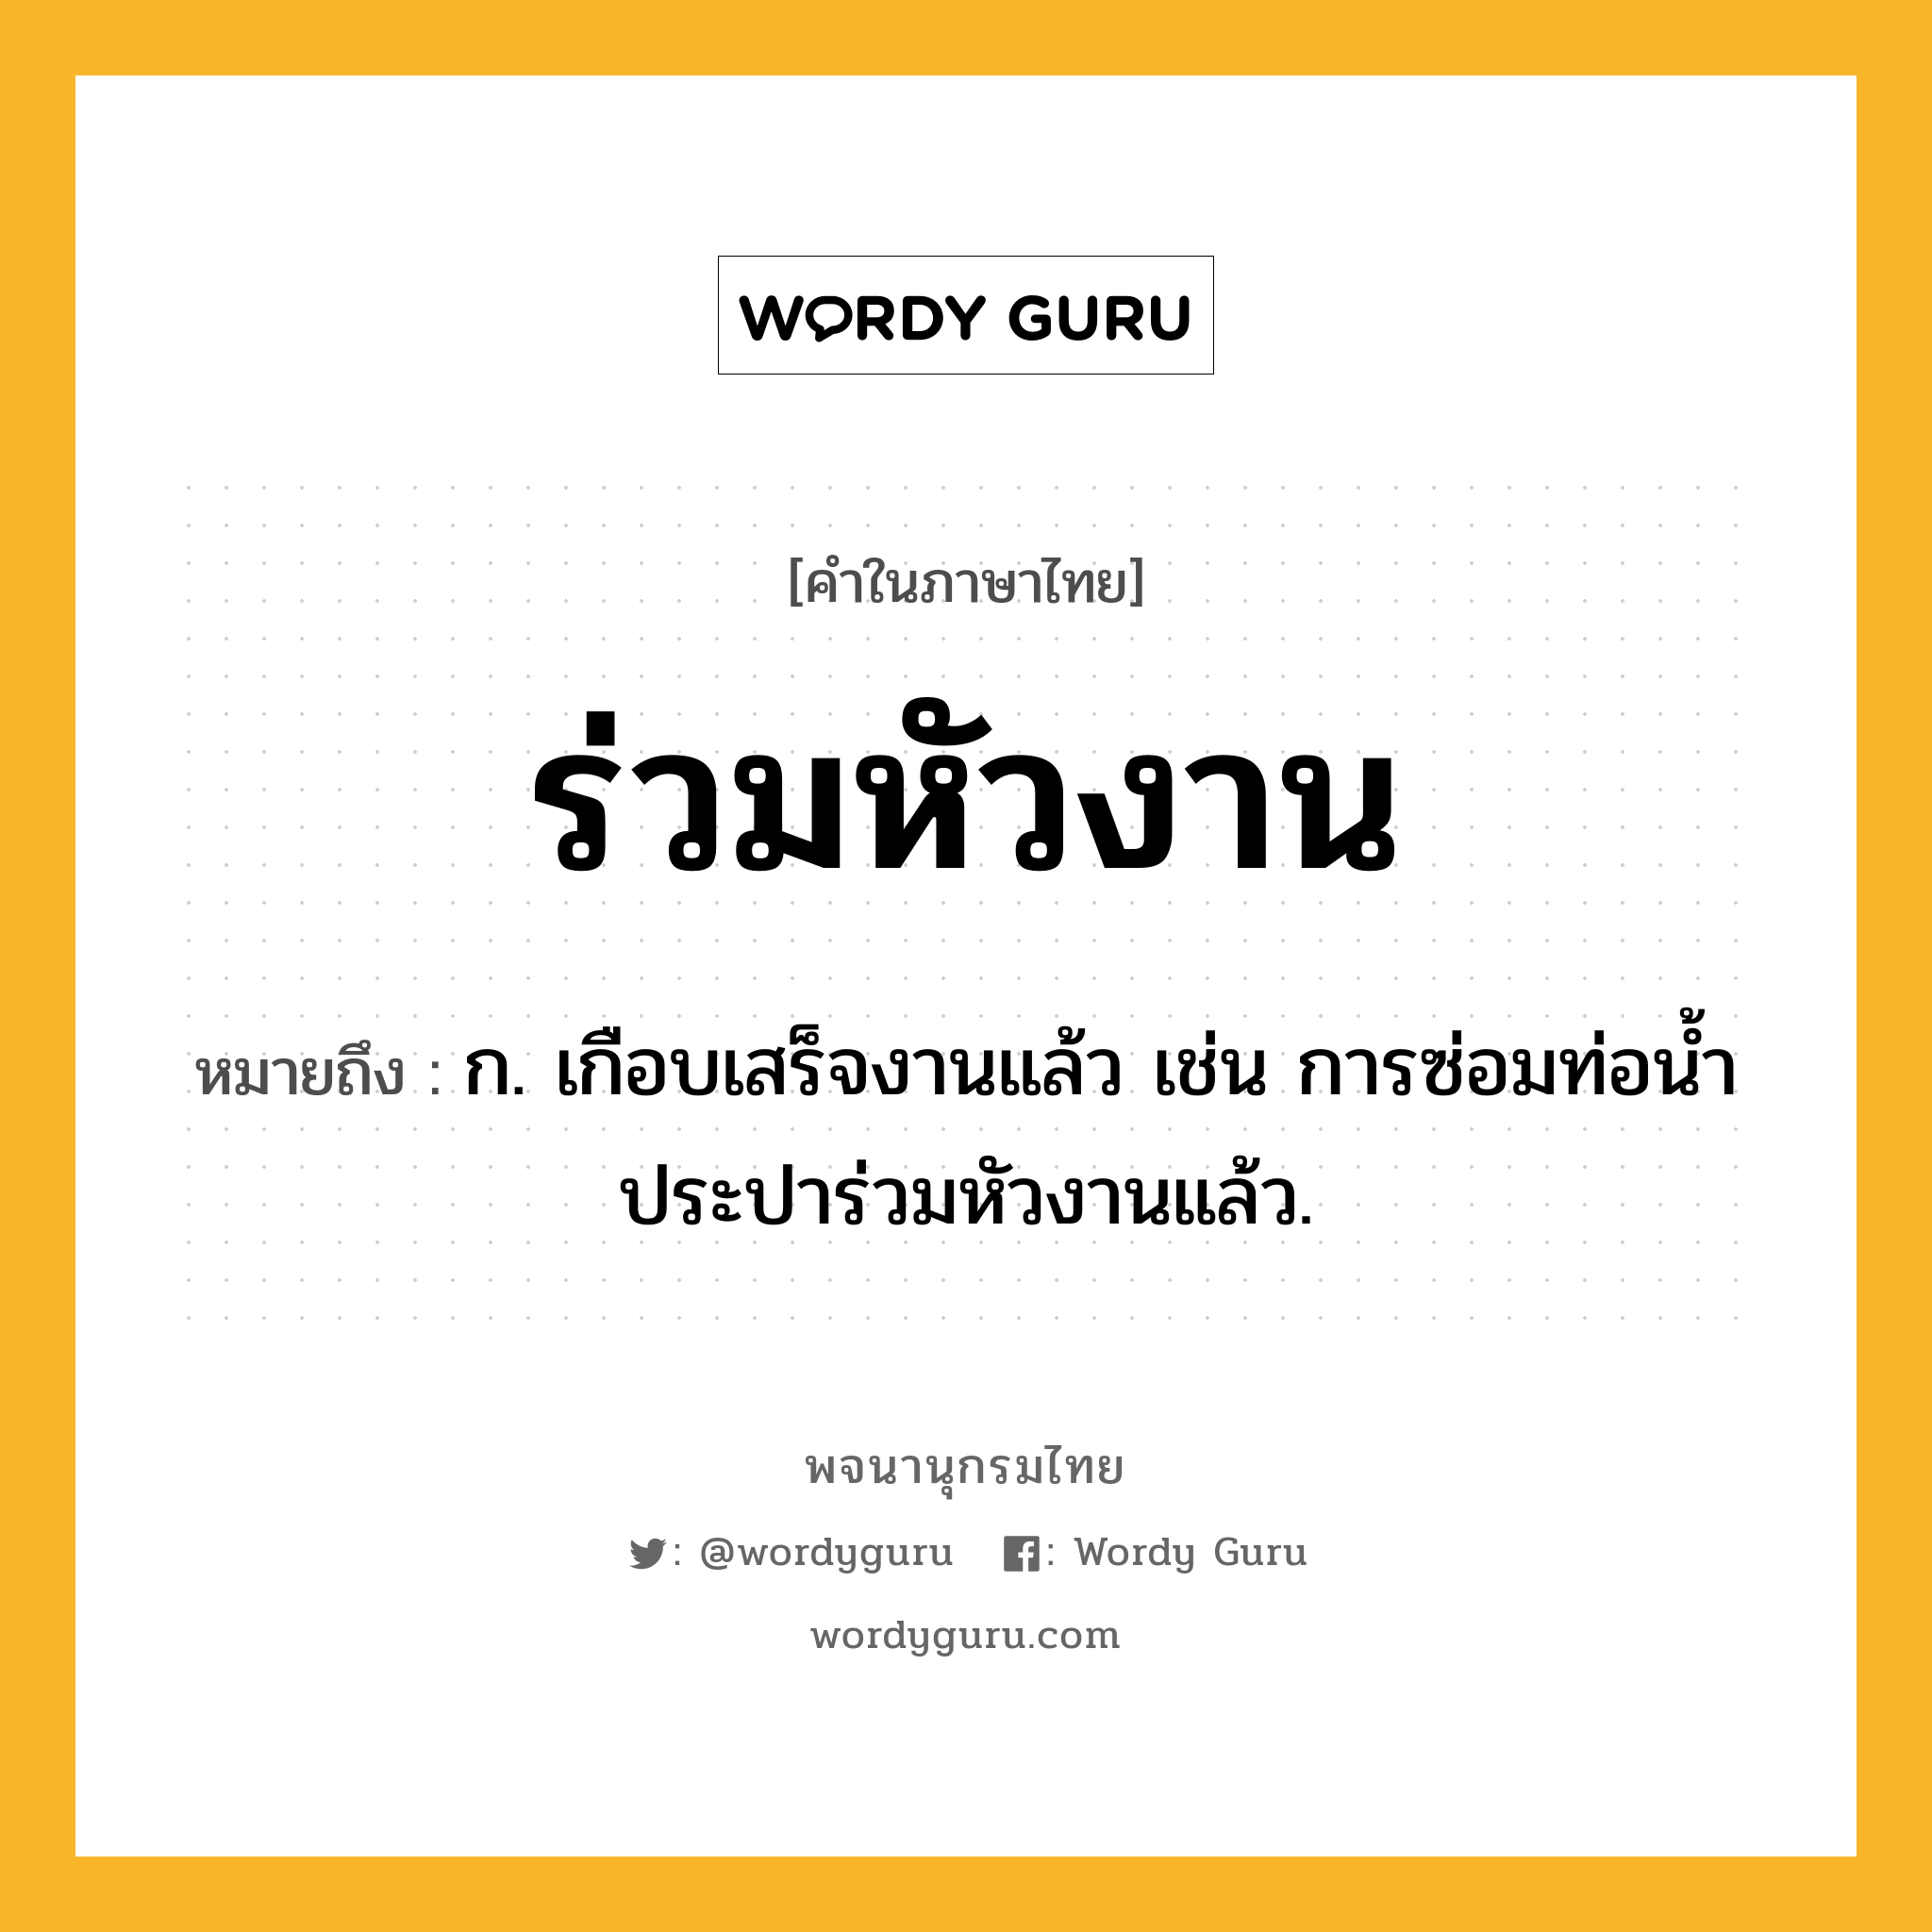 ร่วมหัวงาน ความหมาย หมายถึงอะไร?, คำในภาษาไทย ร่วมหัวงาน หมายถึง ก. เกือบเสร็จงานแล้ว เช่น การซ่อมท่อน้ำประปาร่วมหัวงานแล้ว.